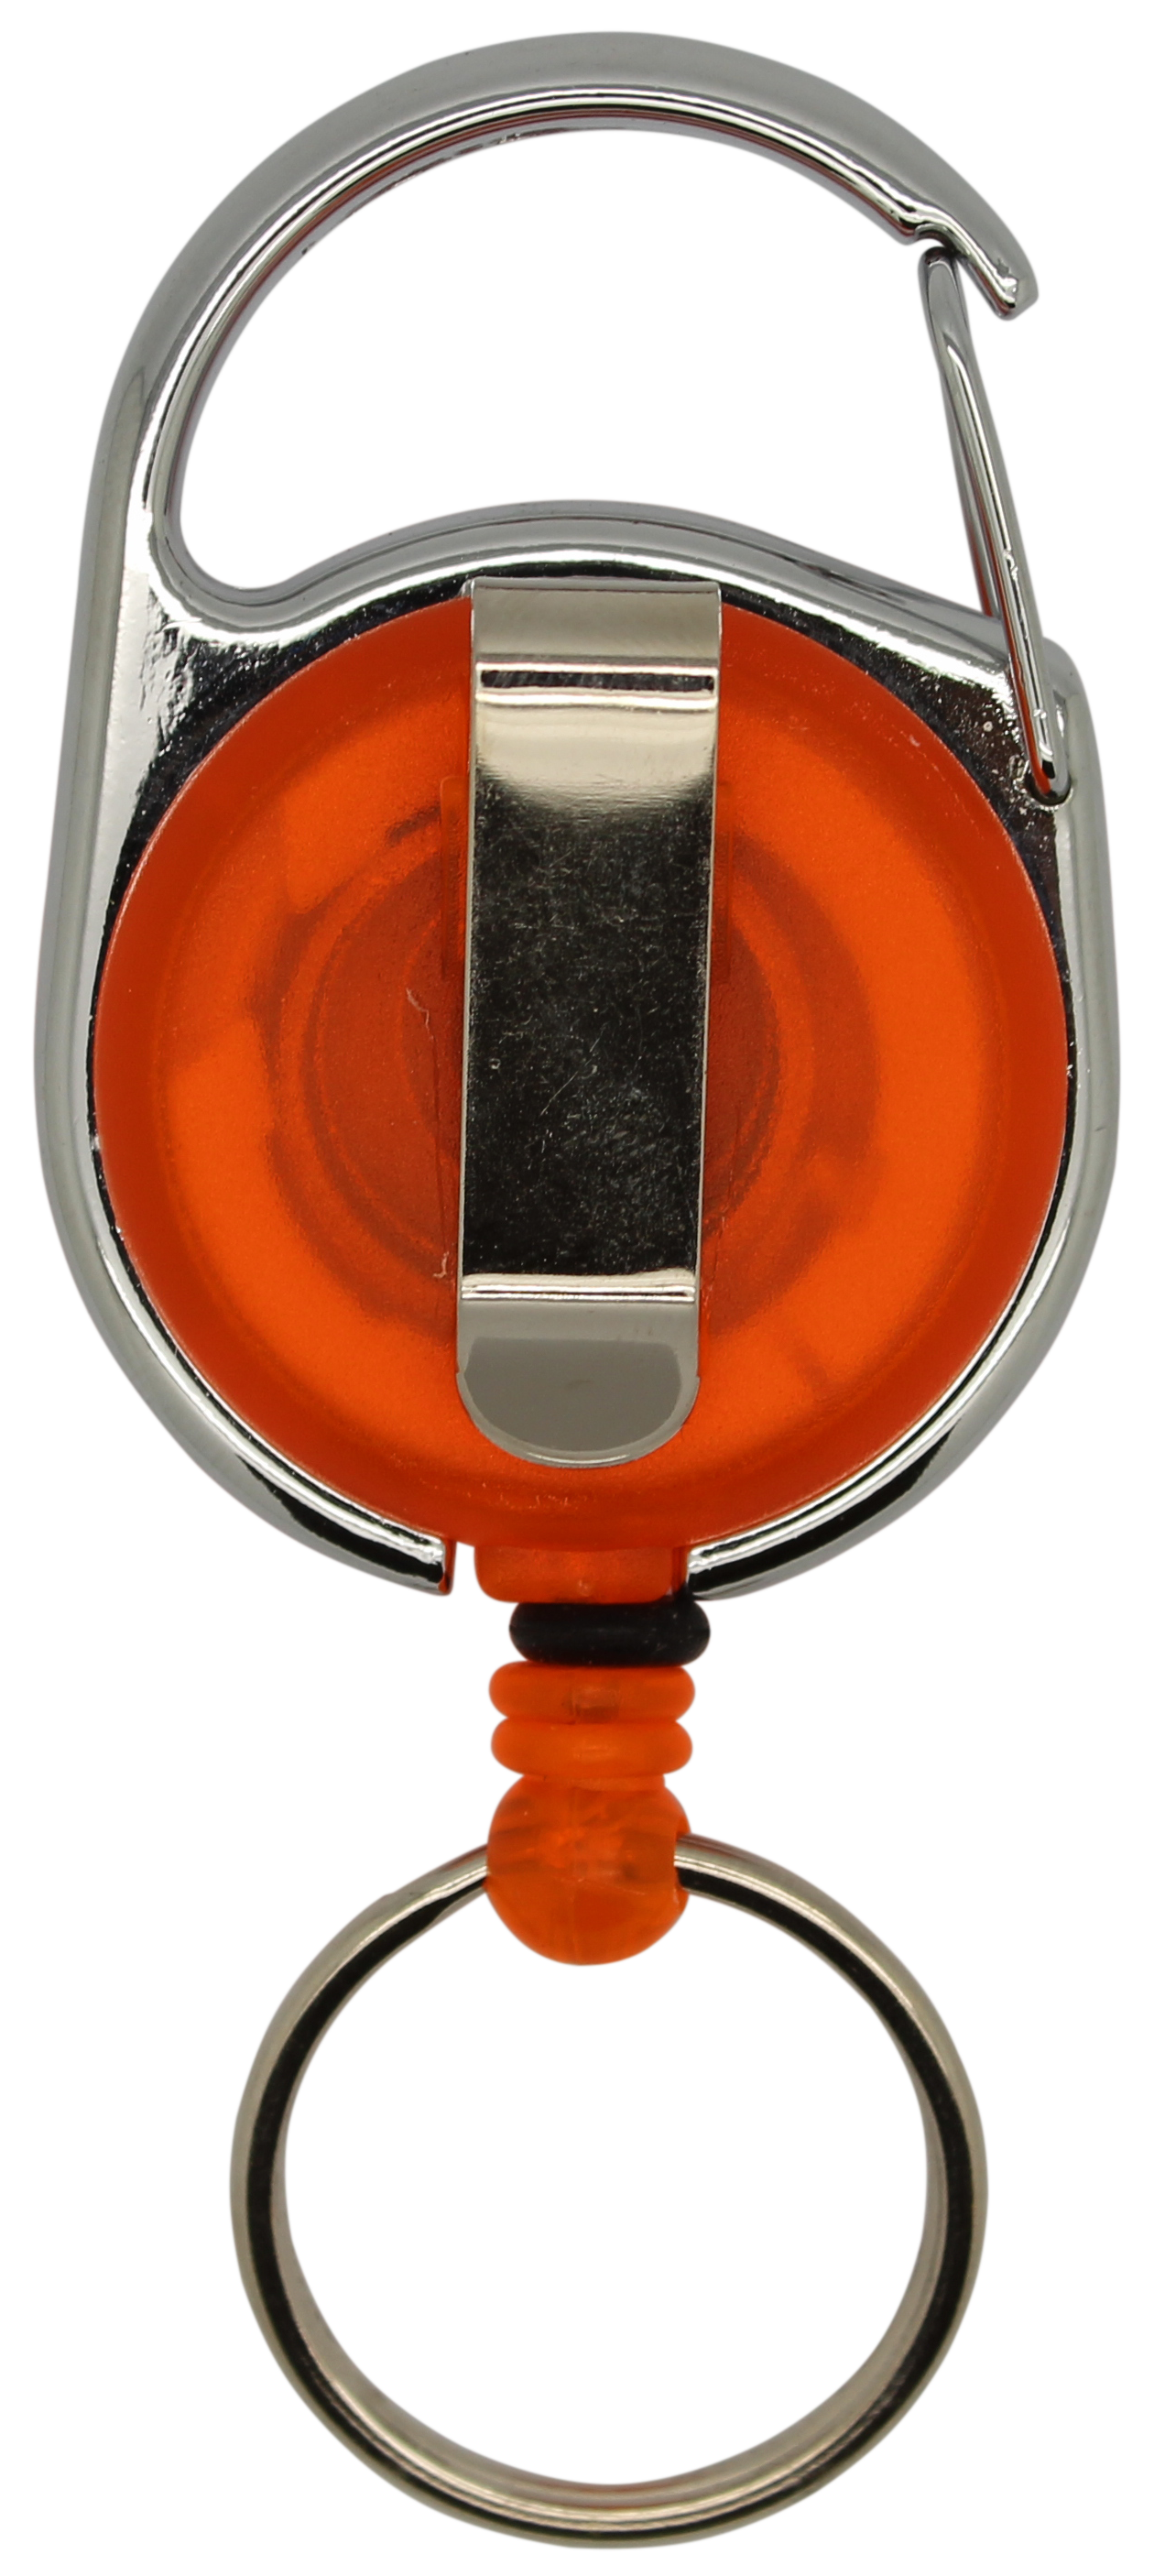 Jojo rund, transparent orange, Karabinerhaken Schlüsselring, Nylonschnur 60 cm 